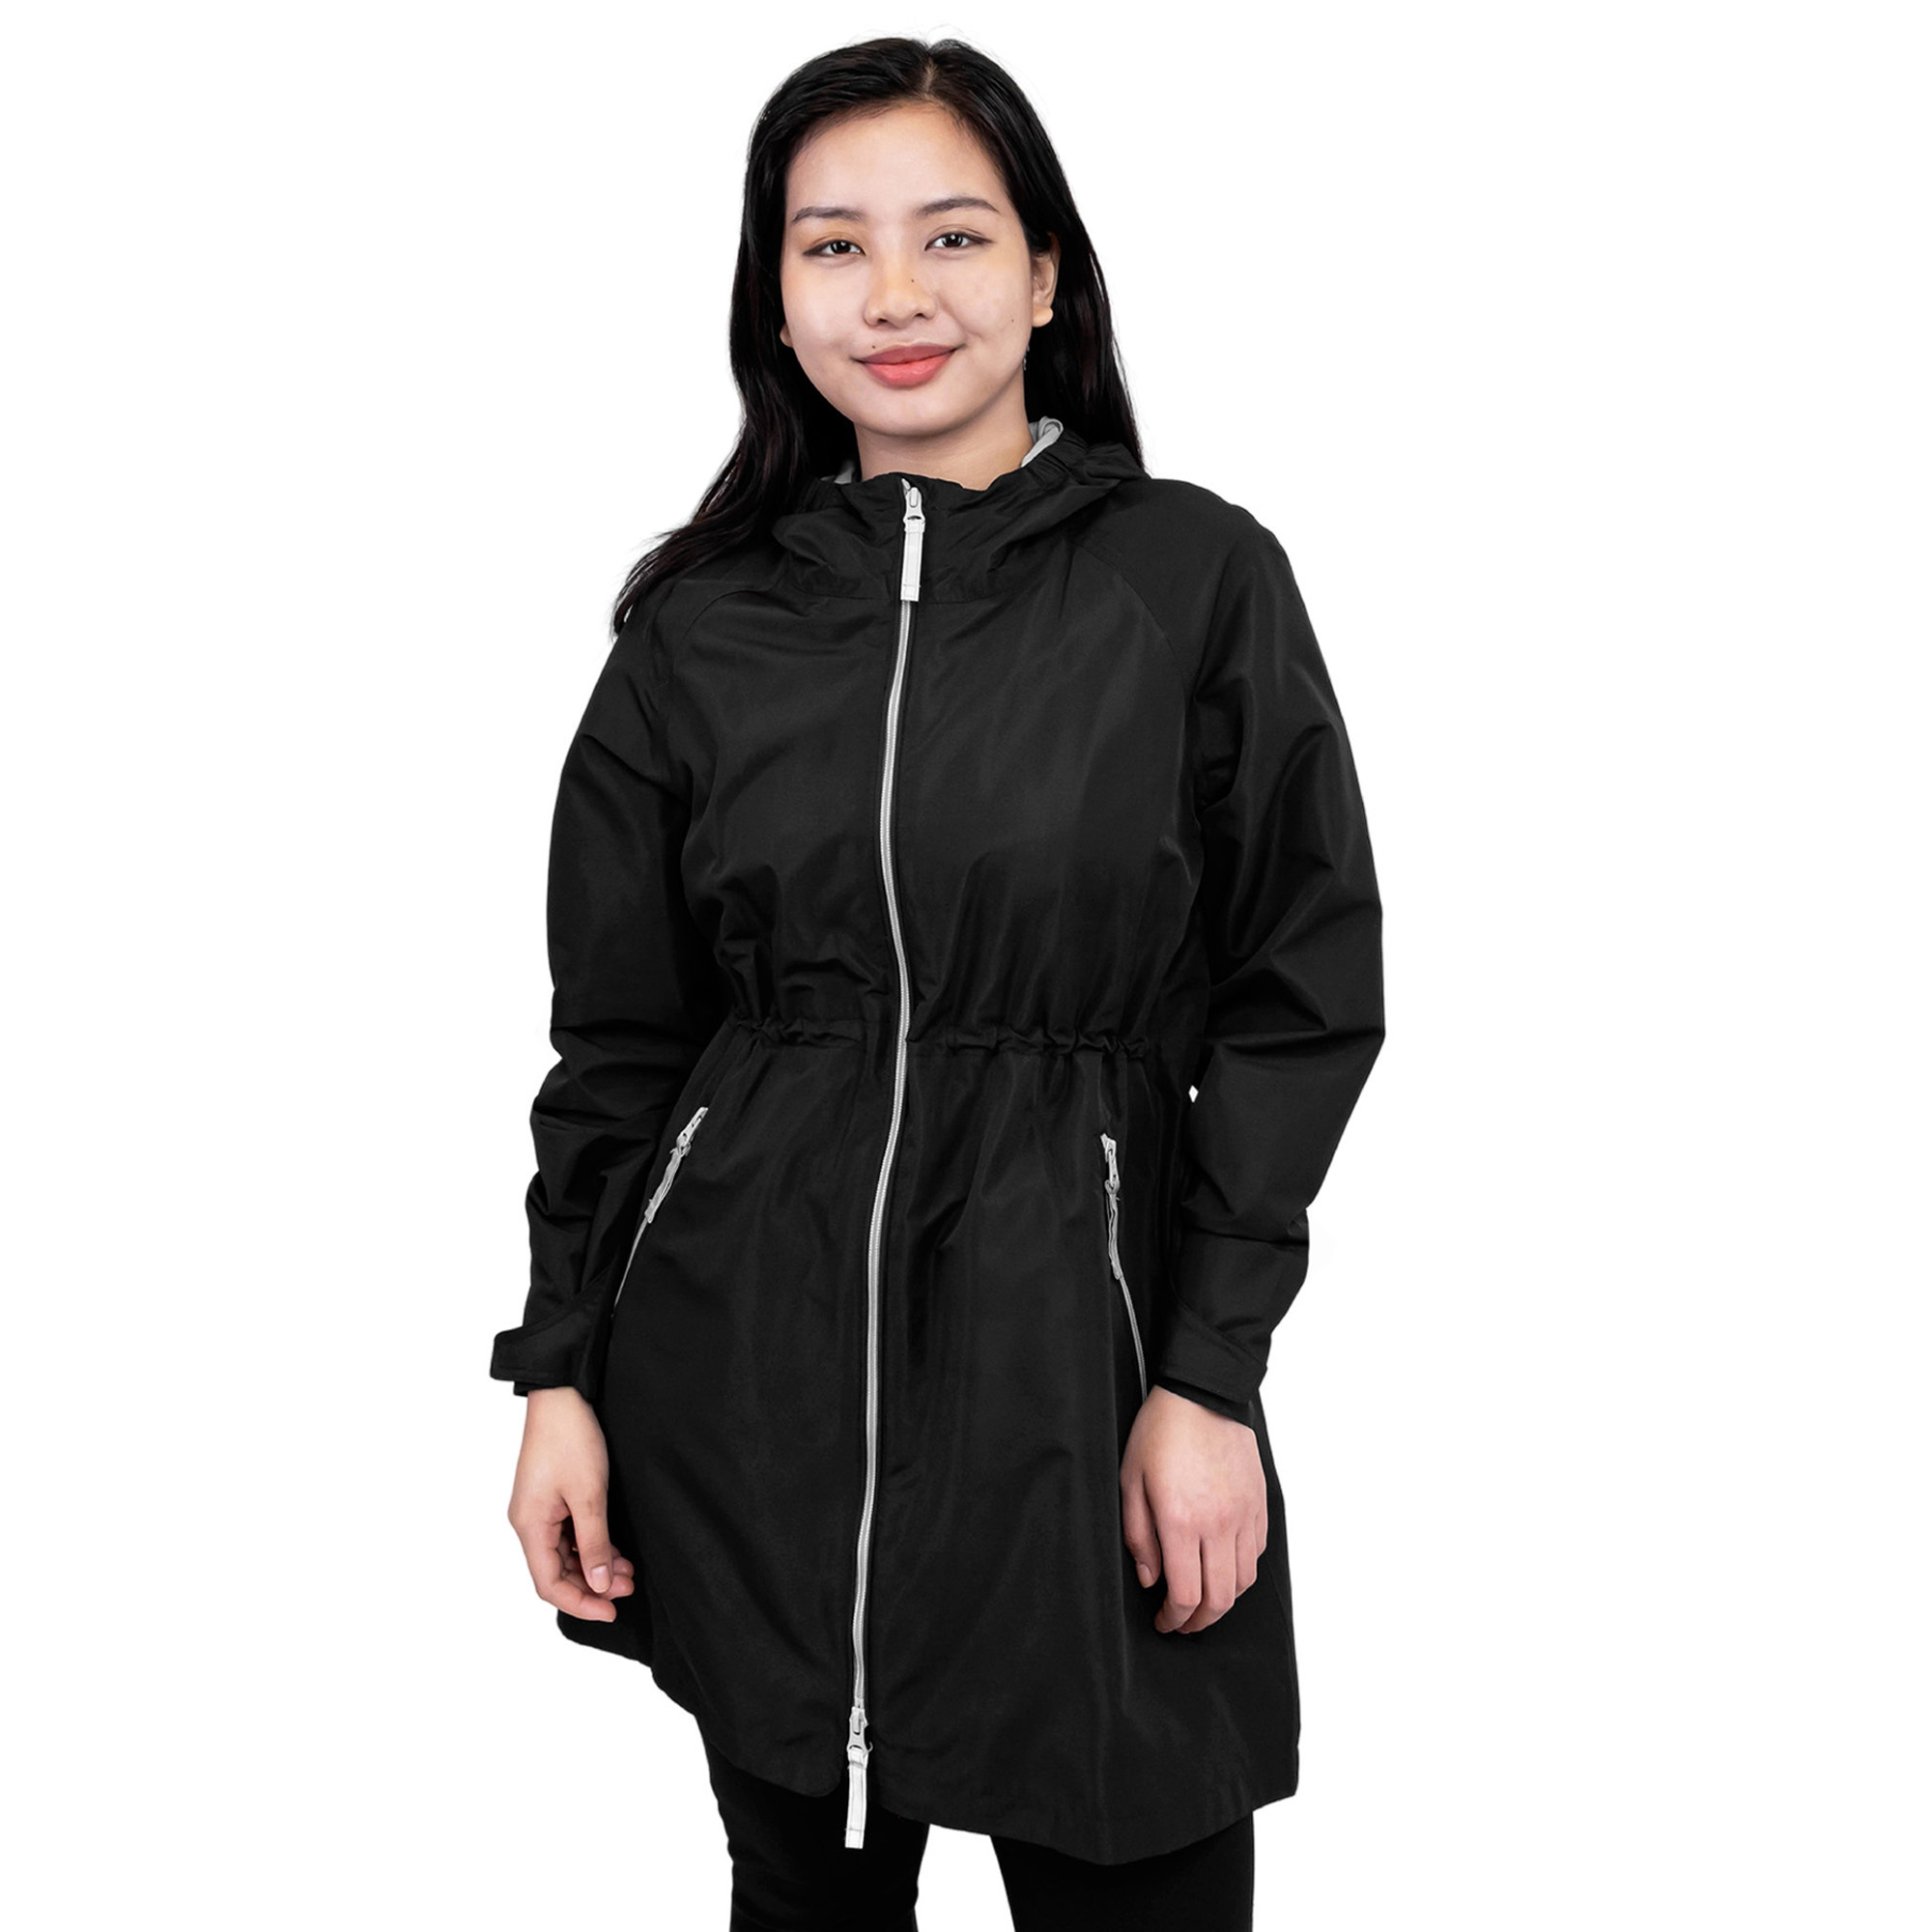 Womens Adjustable Rain Jackets, Black Raincoat